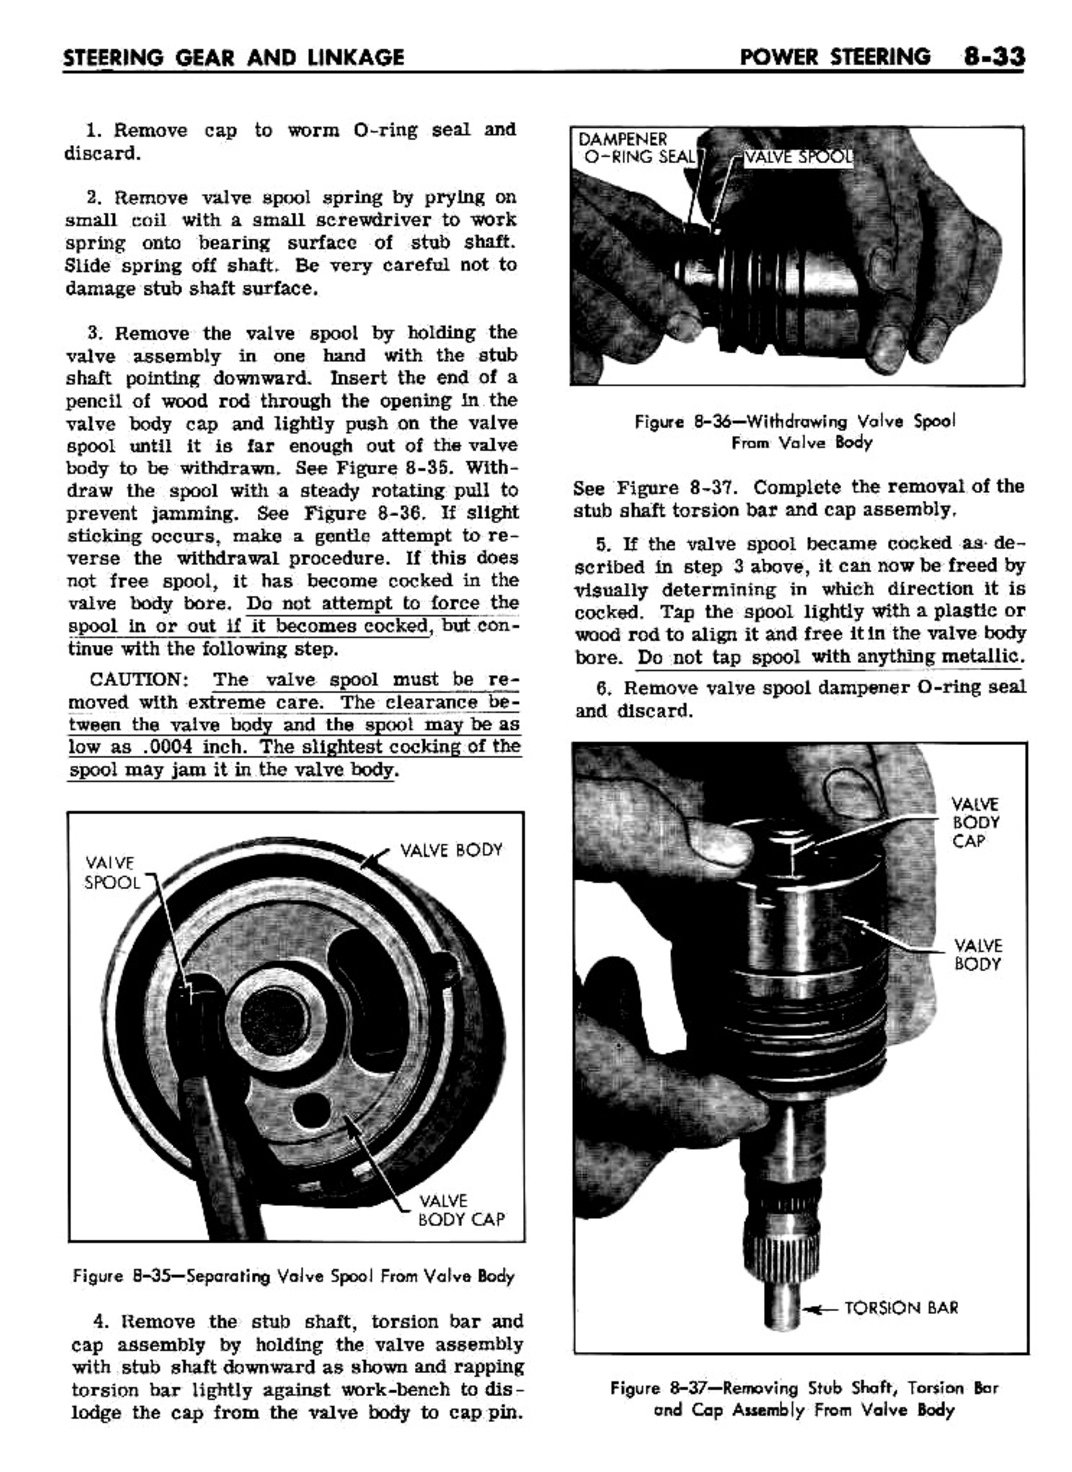 n_08 1961 Buick Shop Manual - Steering-033-033.jpg